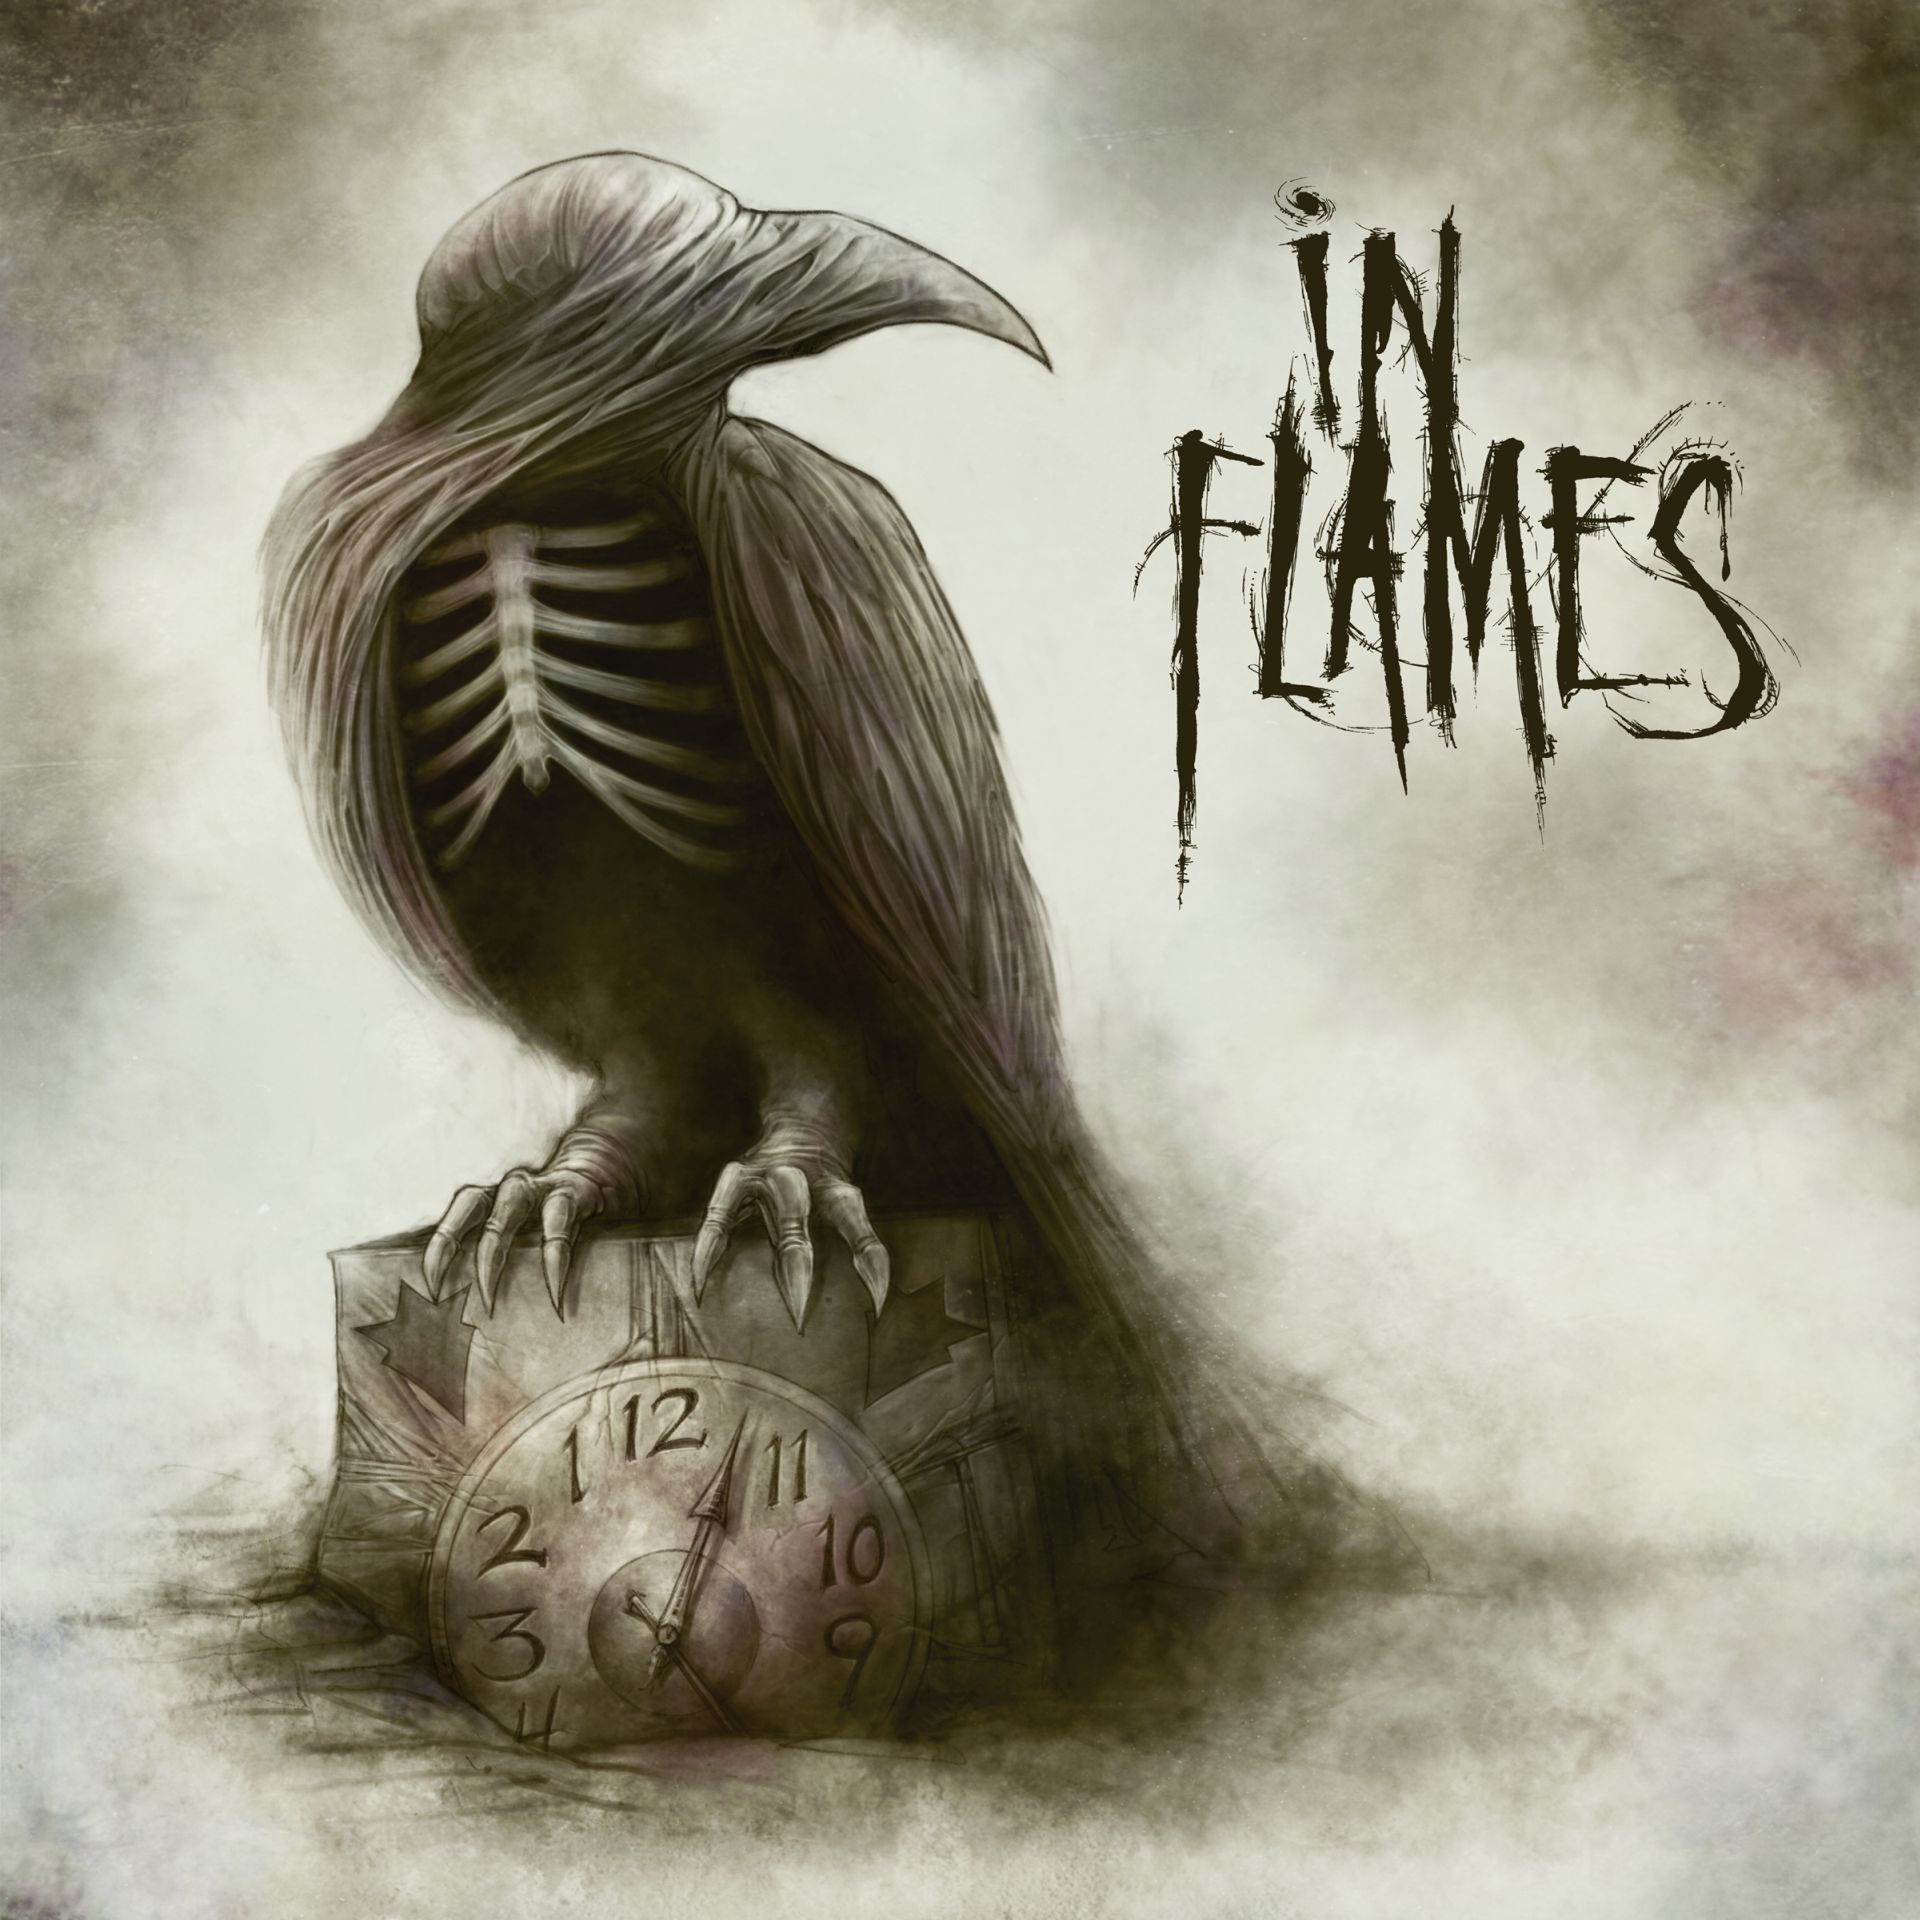 музыка, In Flames, обложки альбомов - обои на рабочий стол